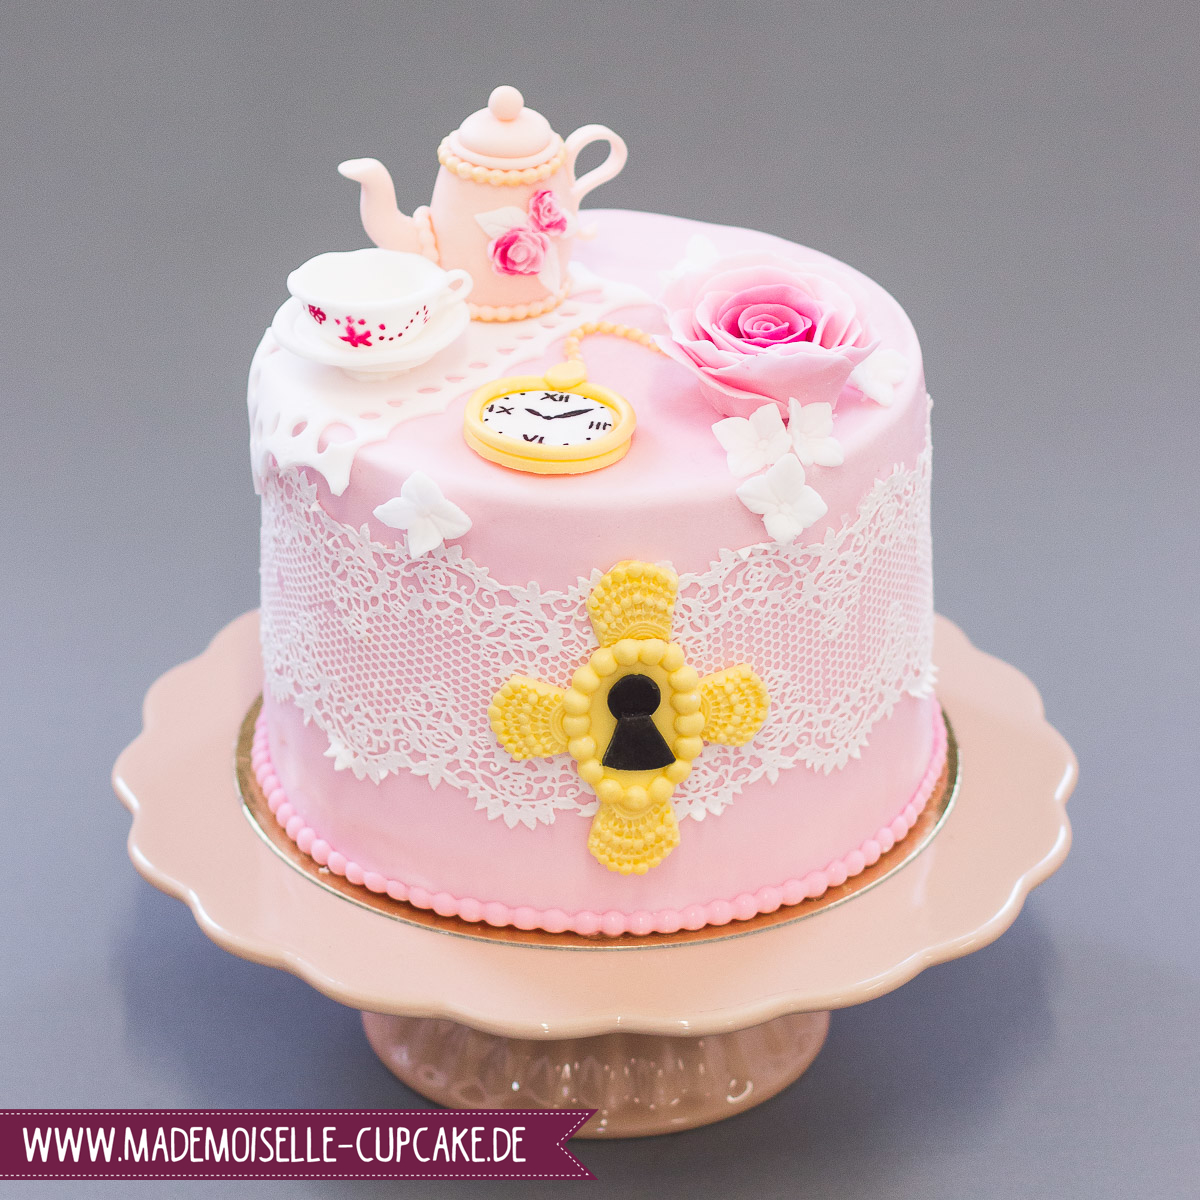 Mademoiselle Cupcake - Feine Törtchen und Cupcakes aus 